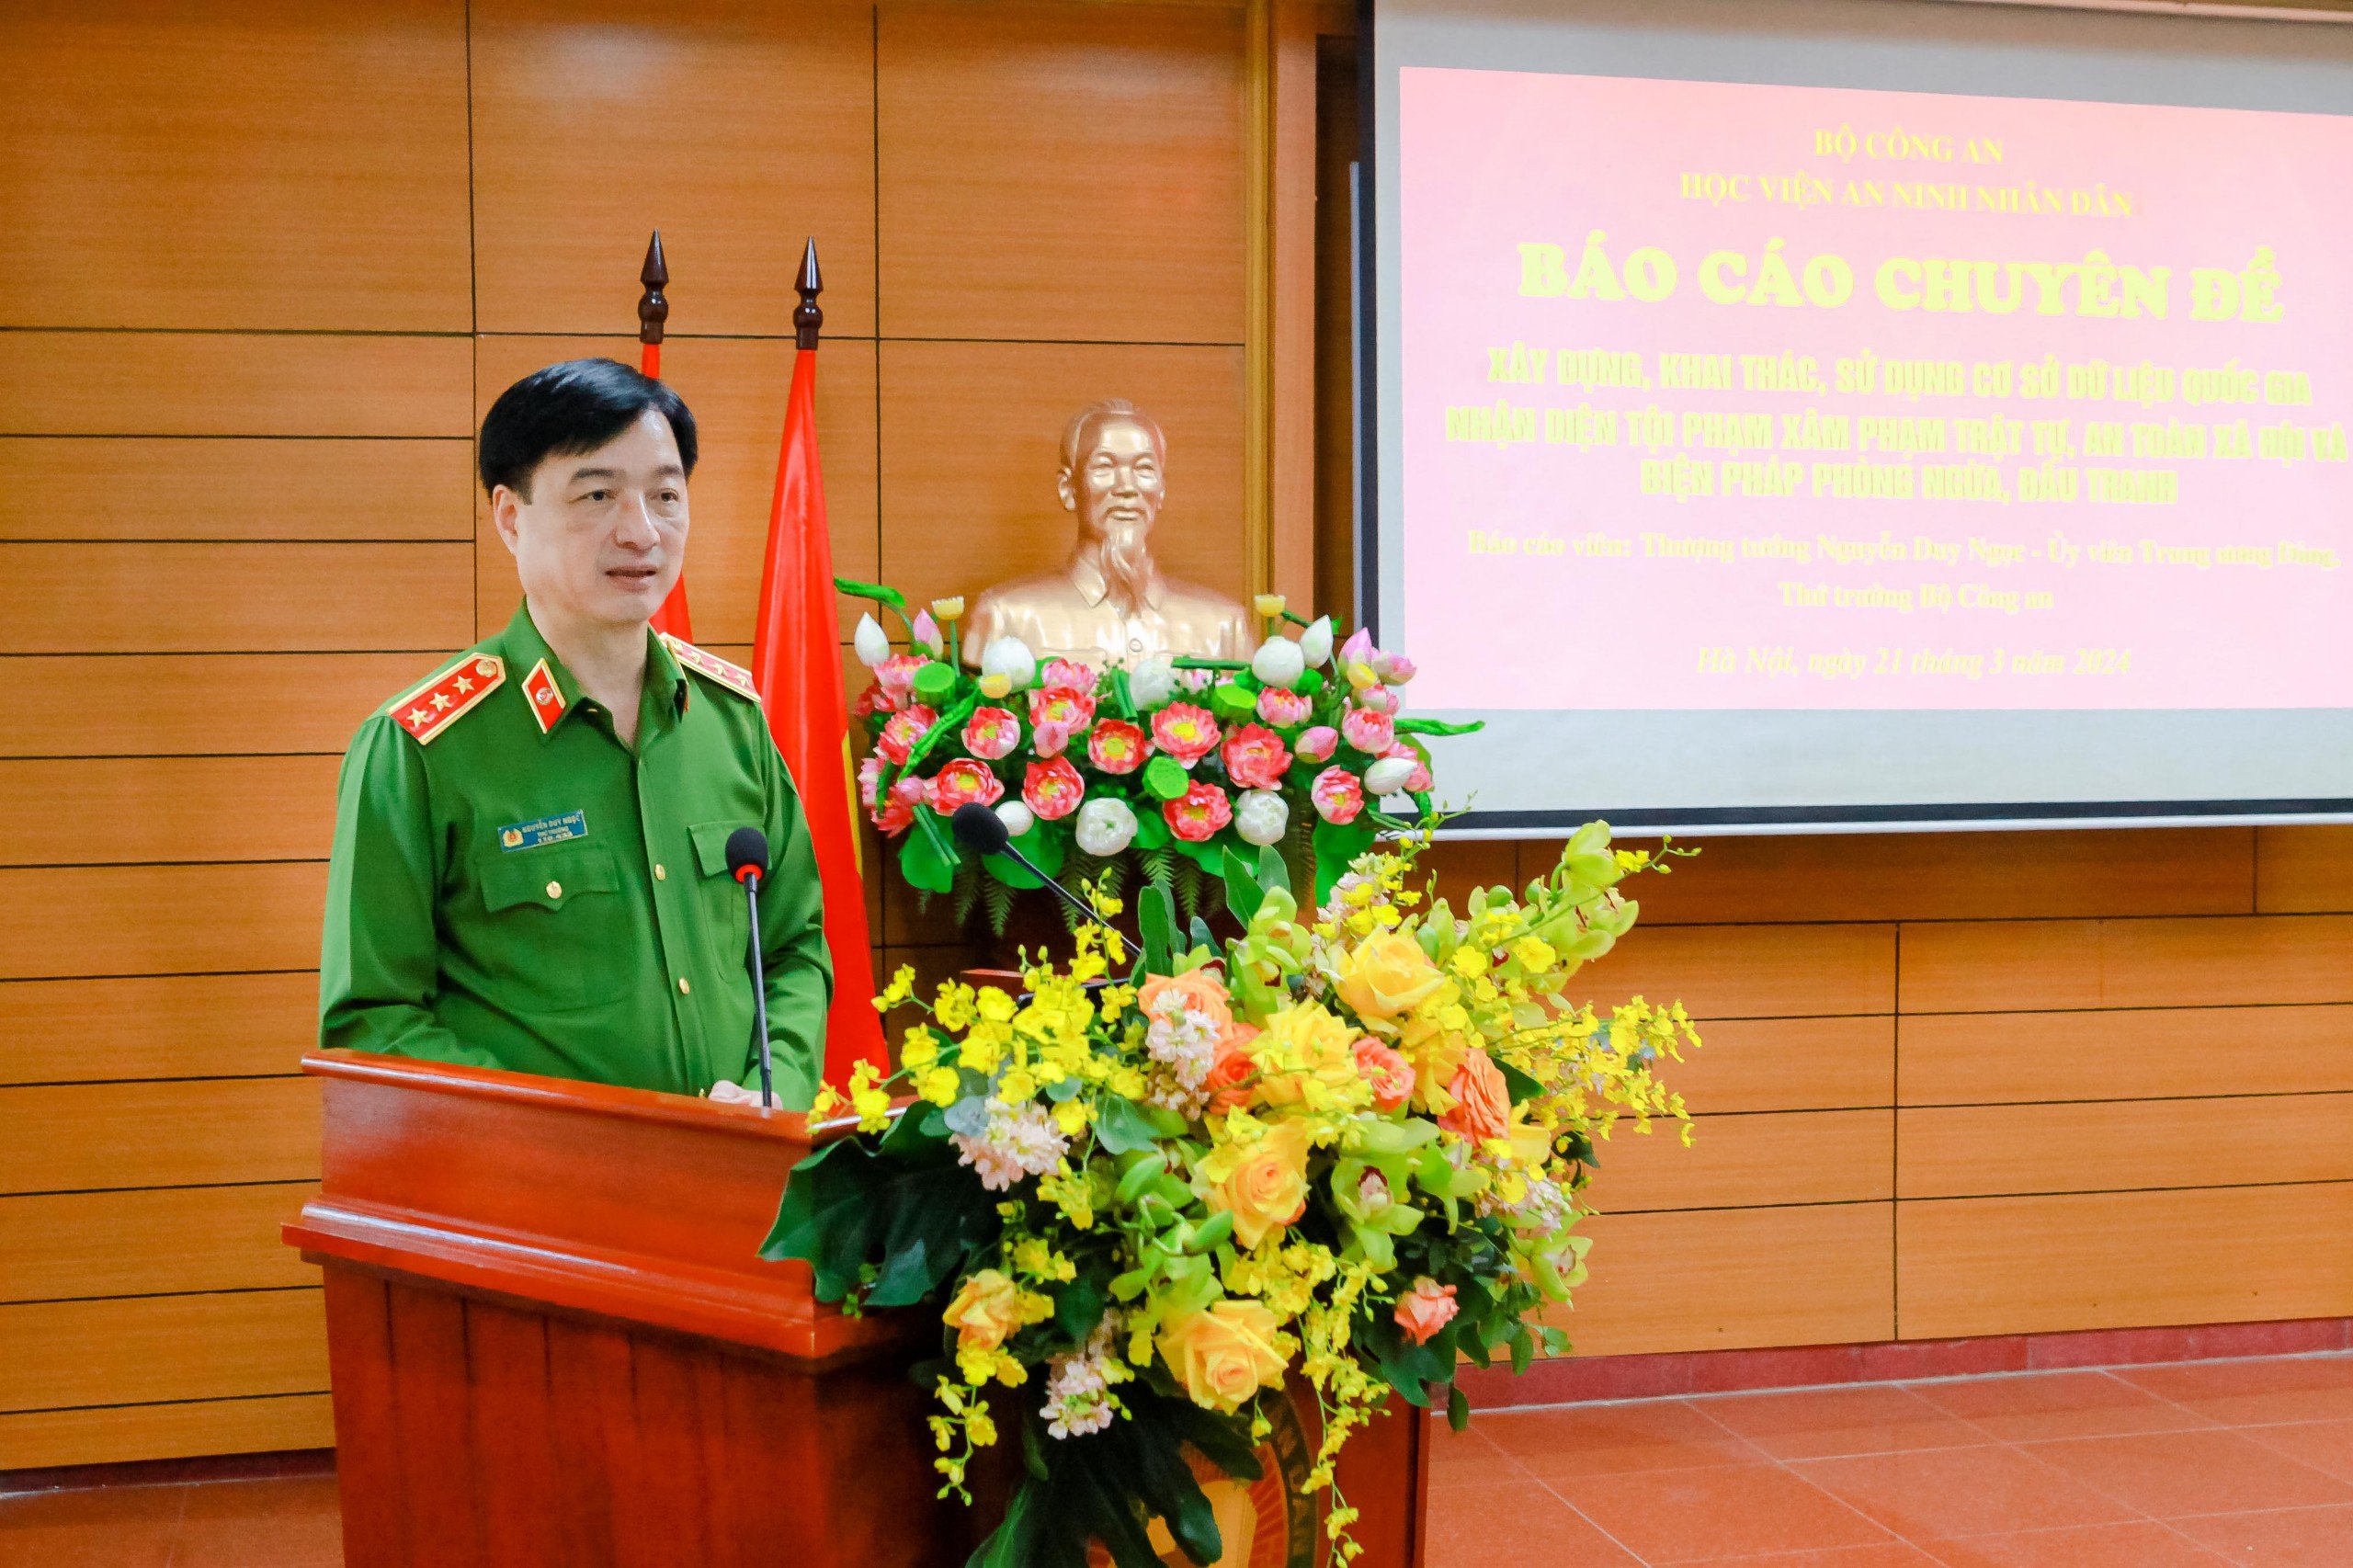 Thứ trưởng Nguyễn Duy Ngọc khen các đơn vị triệt xóa 2 hội nhóm kín, thu giữ 65 khẩu súng, hàng nghìn viên đạn